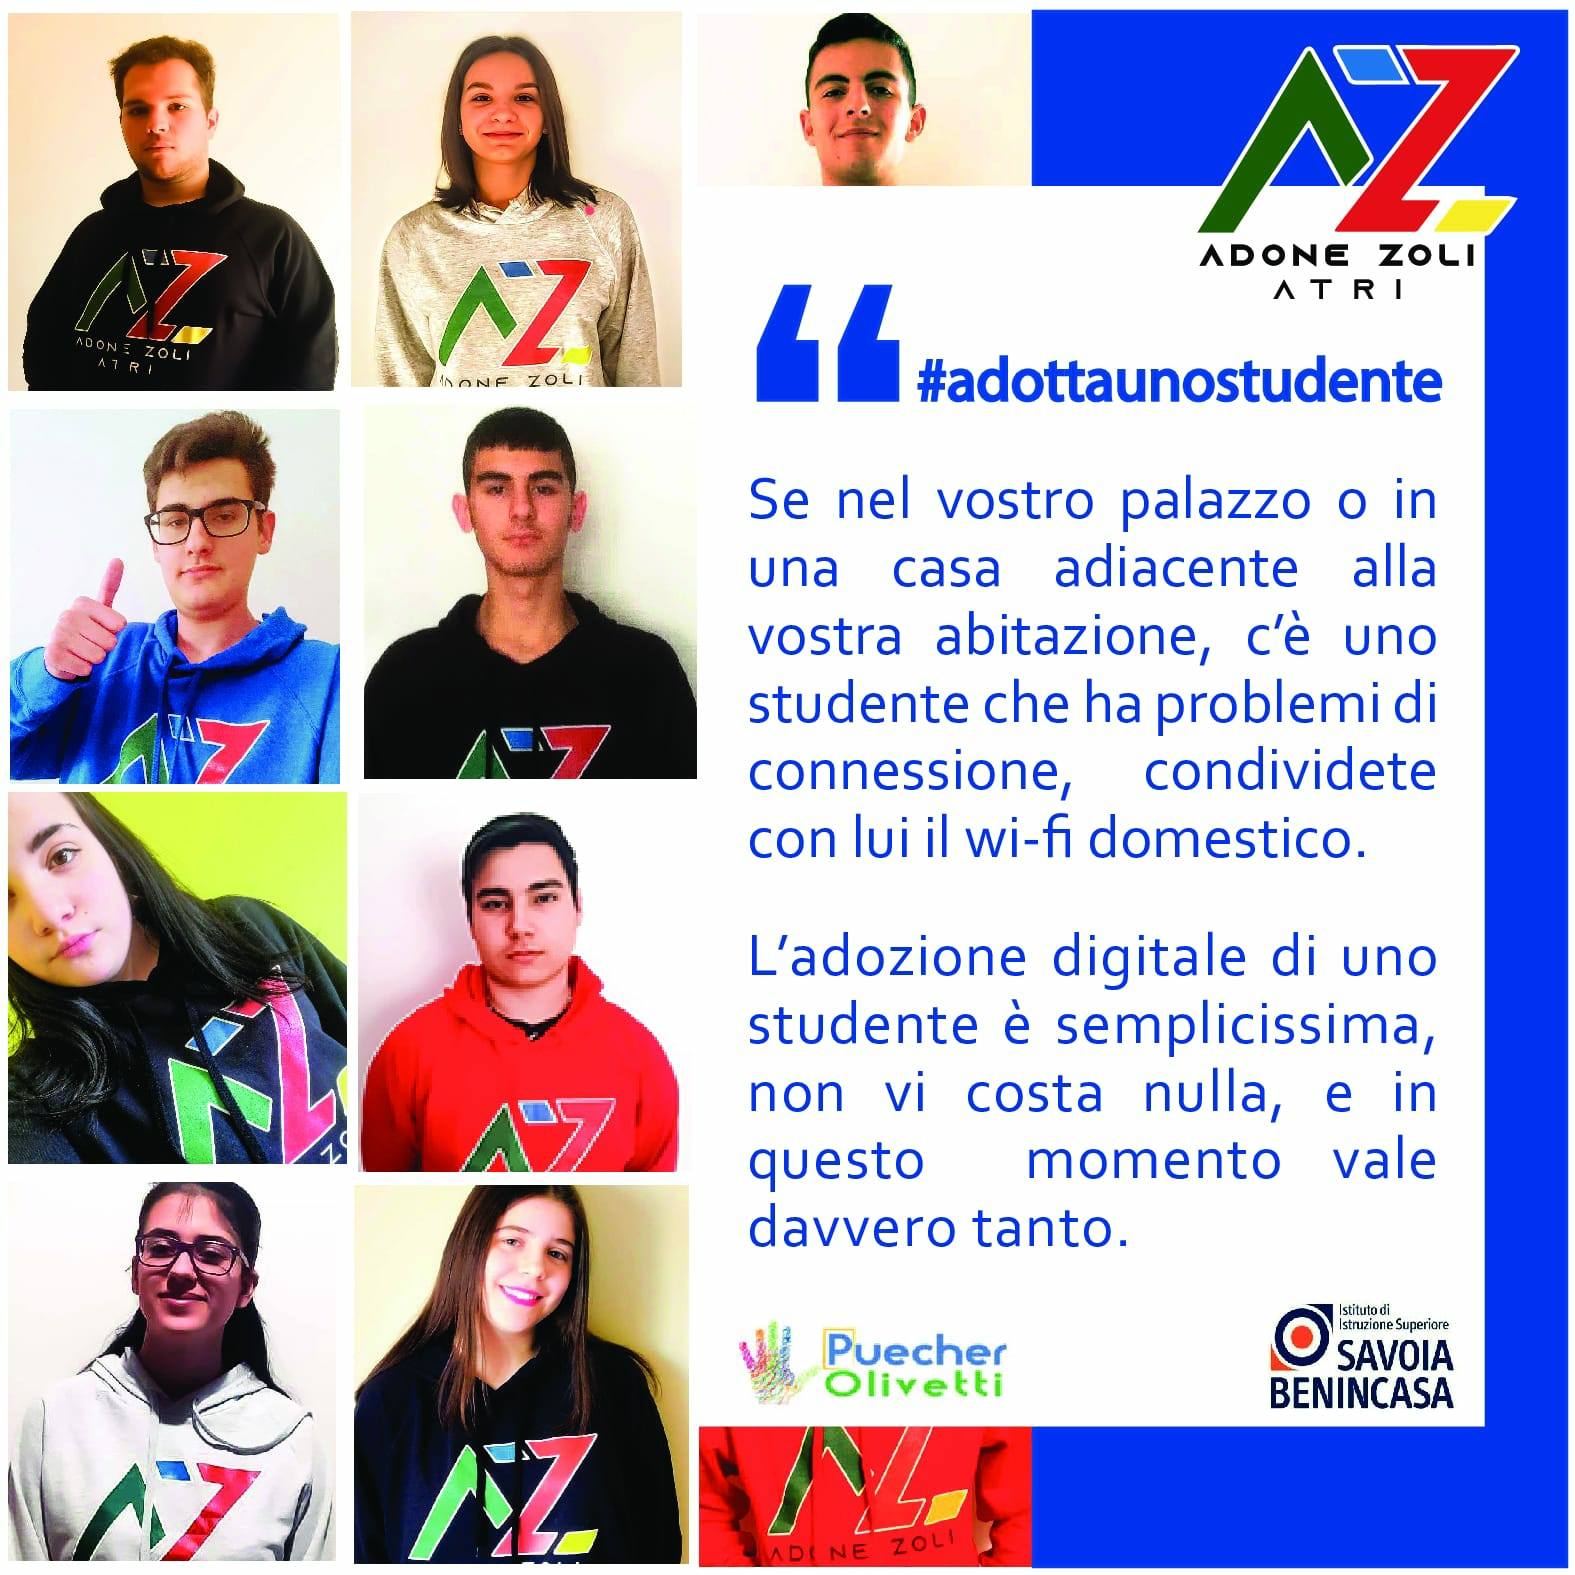 Atri. L’Istituto Superiore “A. Zoli” lancia la campagna #adottaunostudente. I particolari